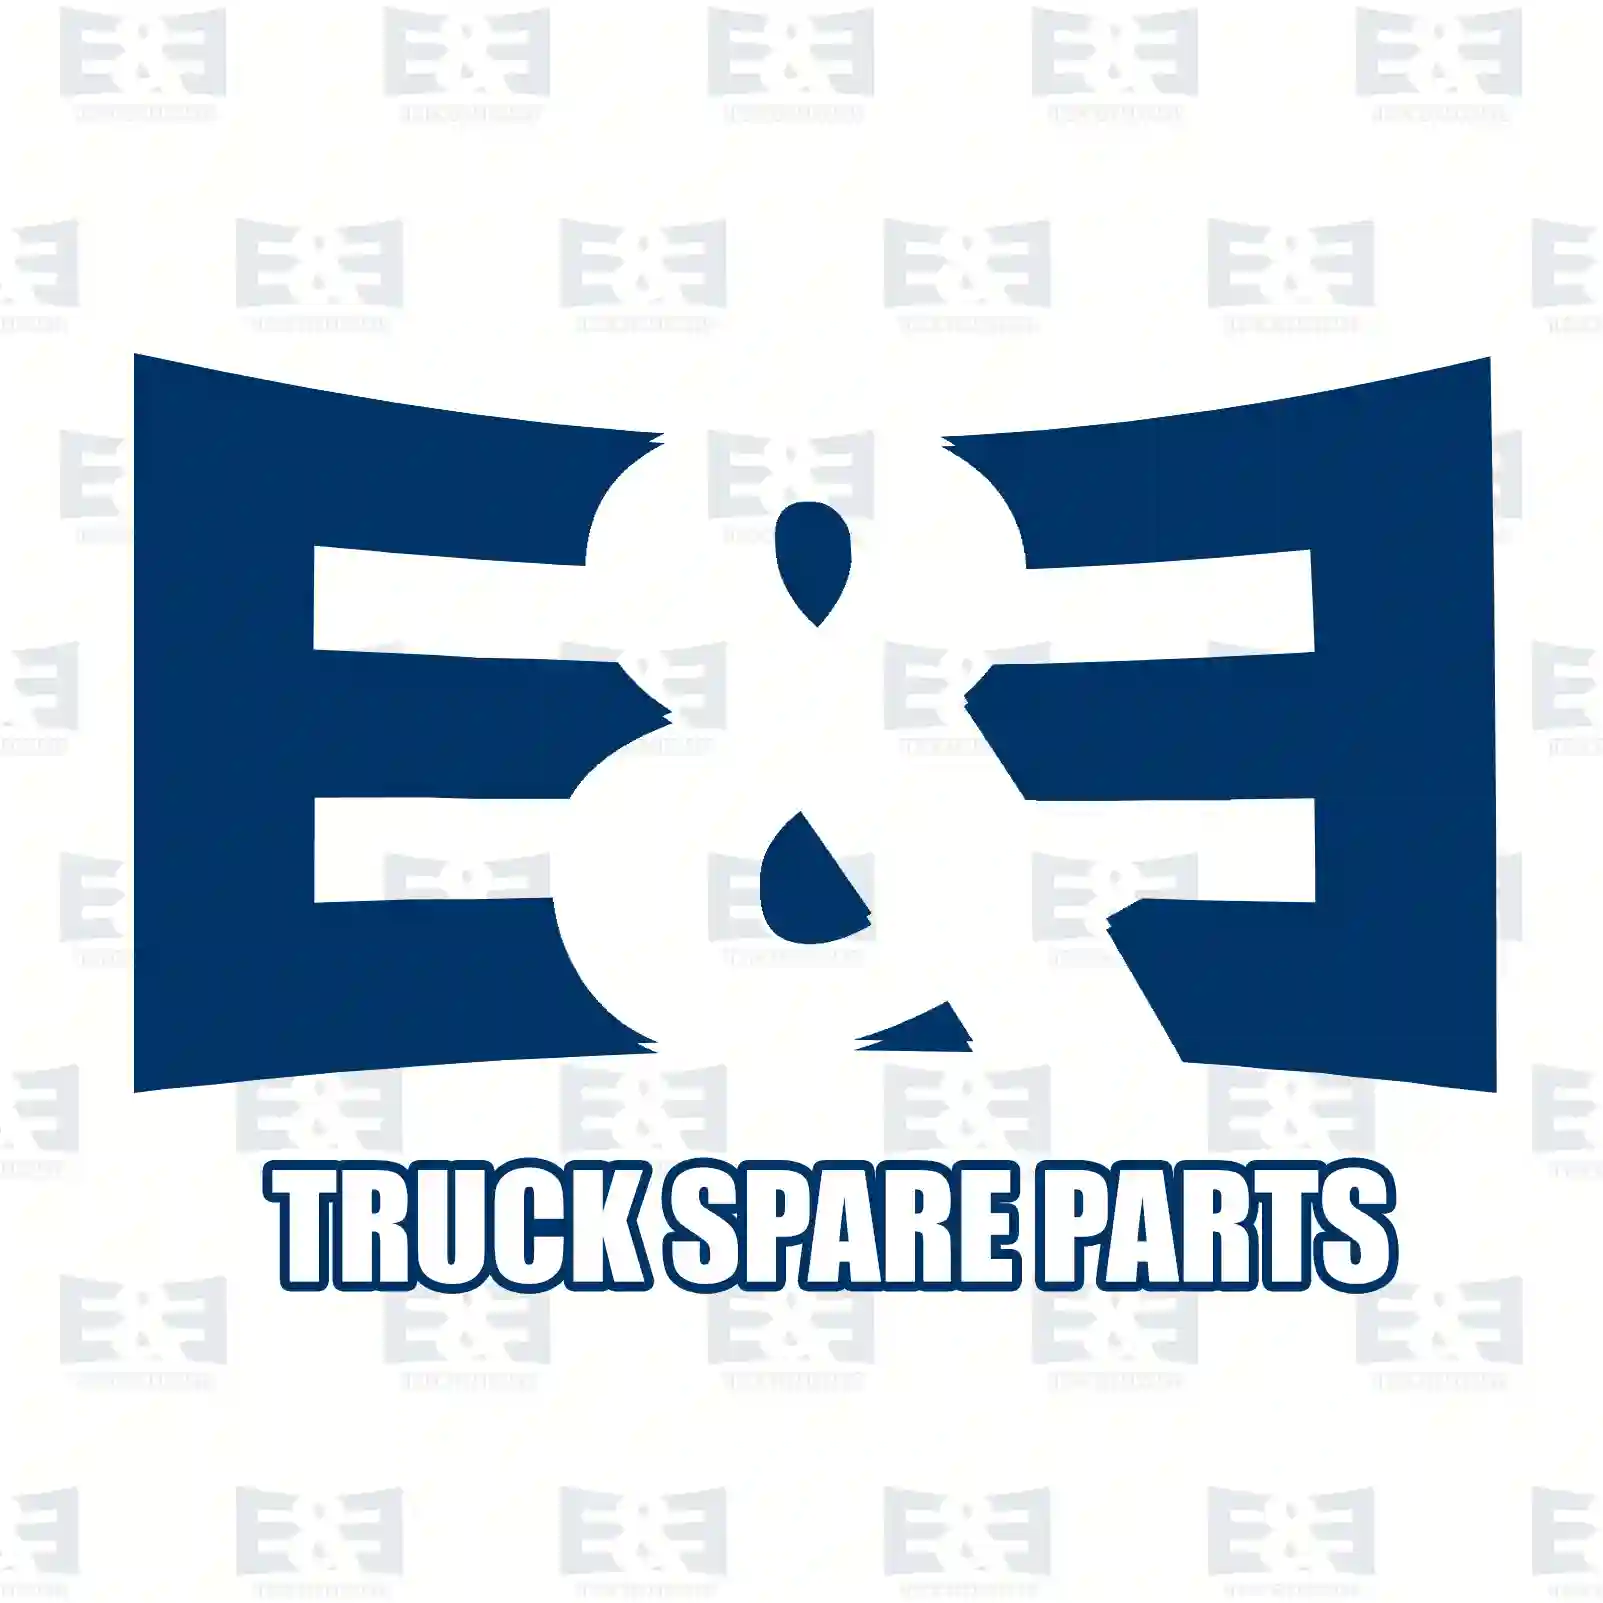 Load sensitive valve, 2E2296146, 1518937, 0014315406, 1935036, 311204, 85108494, ZG50518-0008 ||  2E2296146 E&E Truck Spare Parts | Truck Spare Parts, Auotomotive Spare Parts Load sensitive valve, 2E2296146, 1518937, 0014315406, 1935036, 311204, 85108494, ZG50518-0008 ||  2E2296146 E&E Truck Spare Parts | Truck Spare Parts, Auotomotive Spare Parts